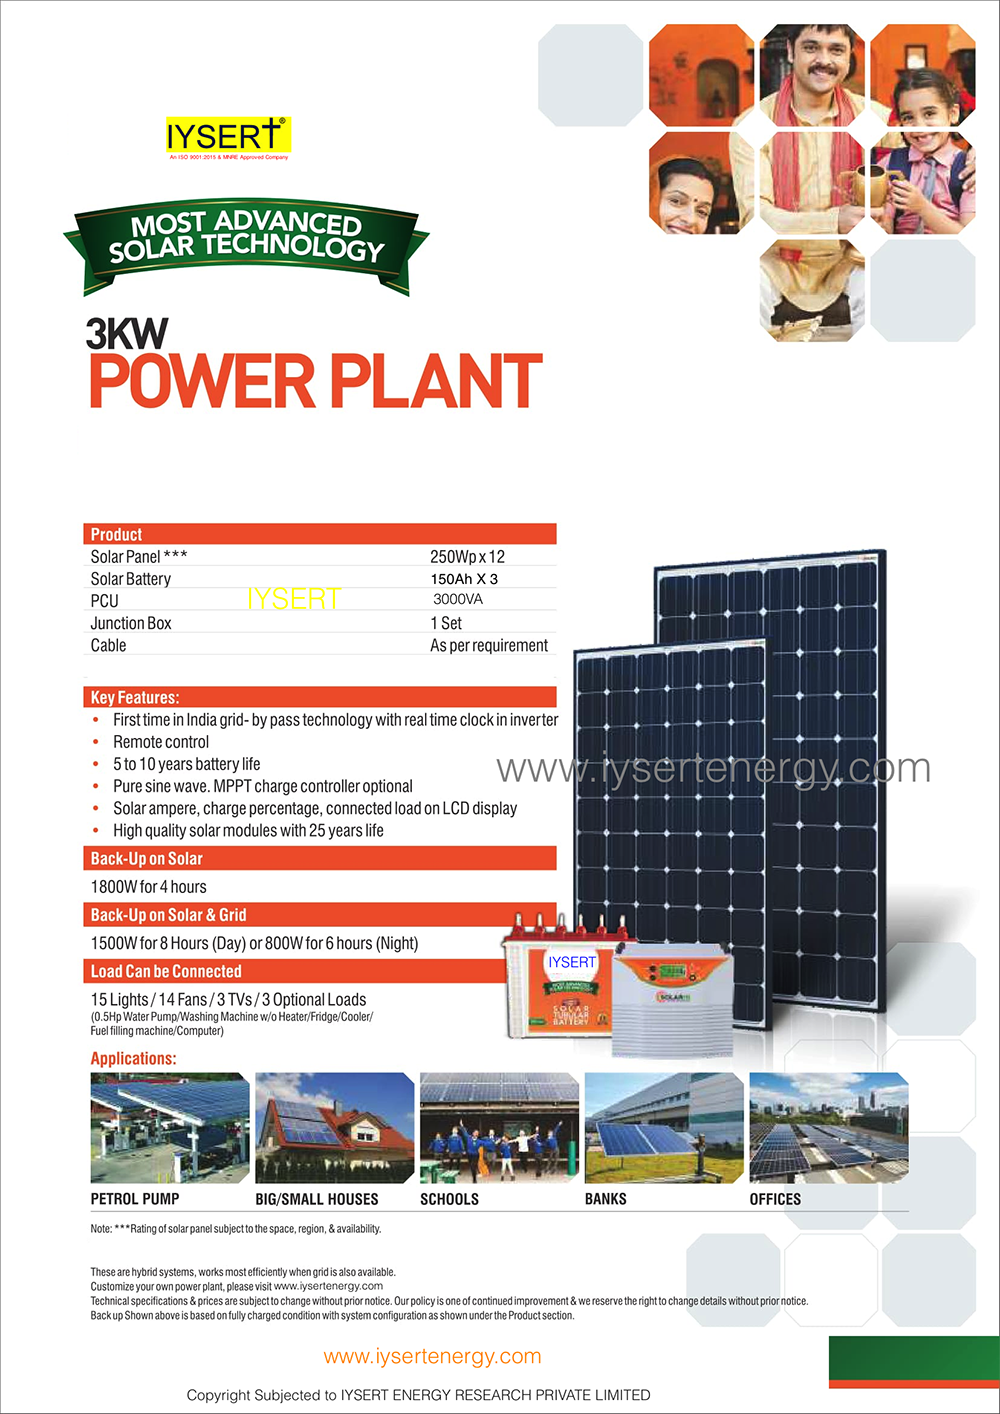 solar generators